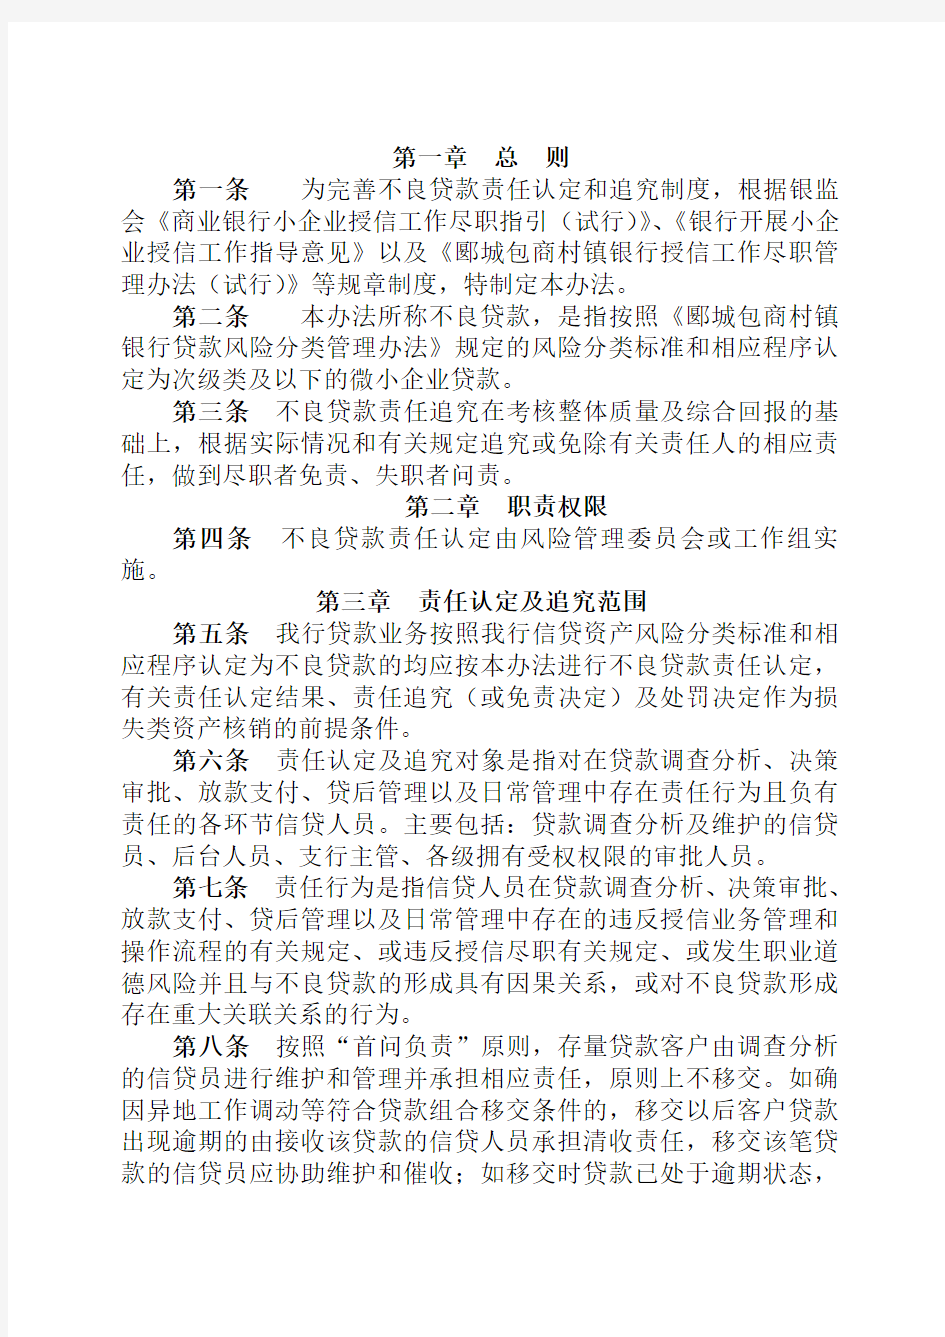 不良贷款责任认定及追究管理办法(刘世雄)修改后